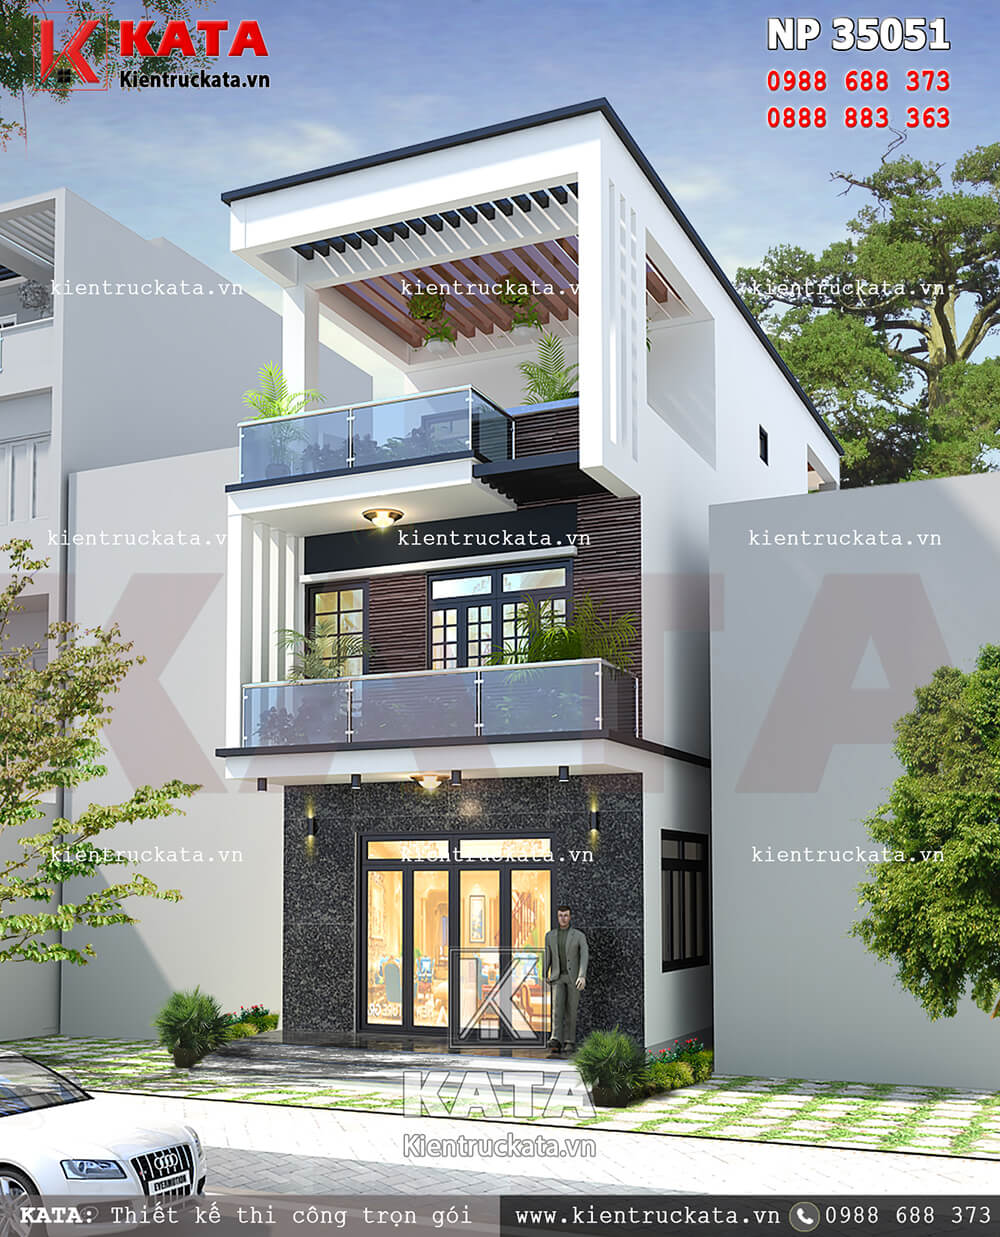 Mẫu thiết kế nhà lô phố 3 tầng hiện đại tại Ninh Bình – Mã số: NP 35051